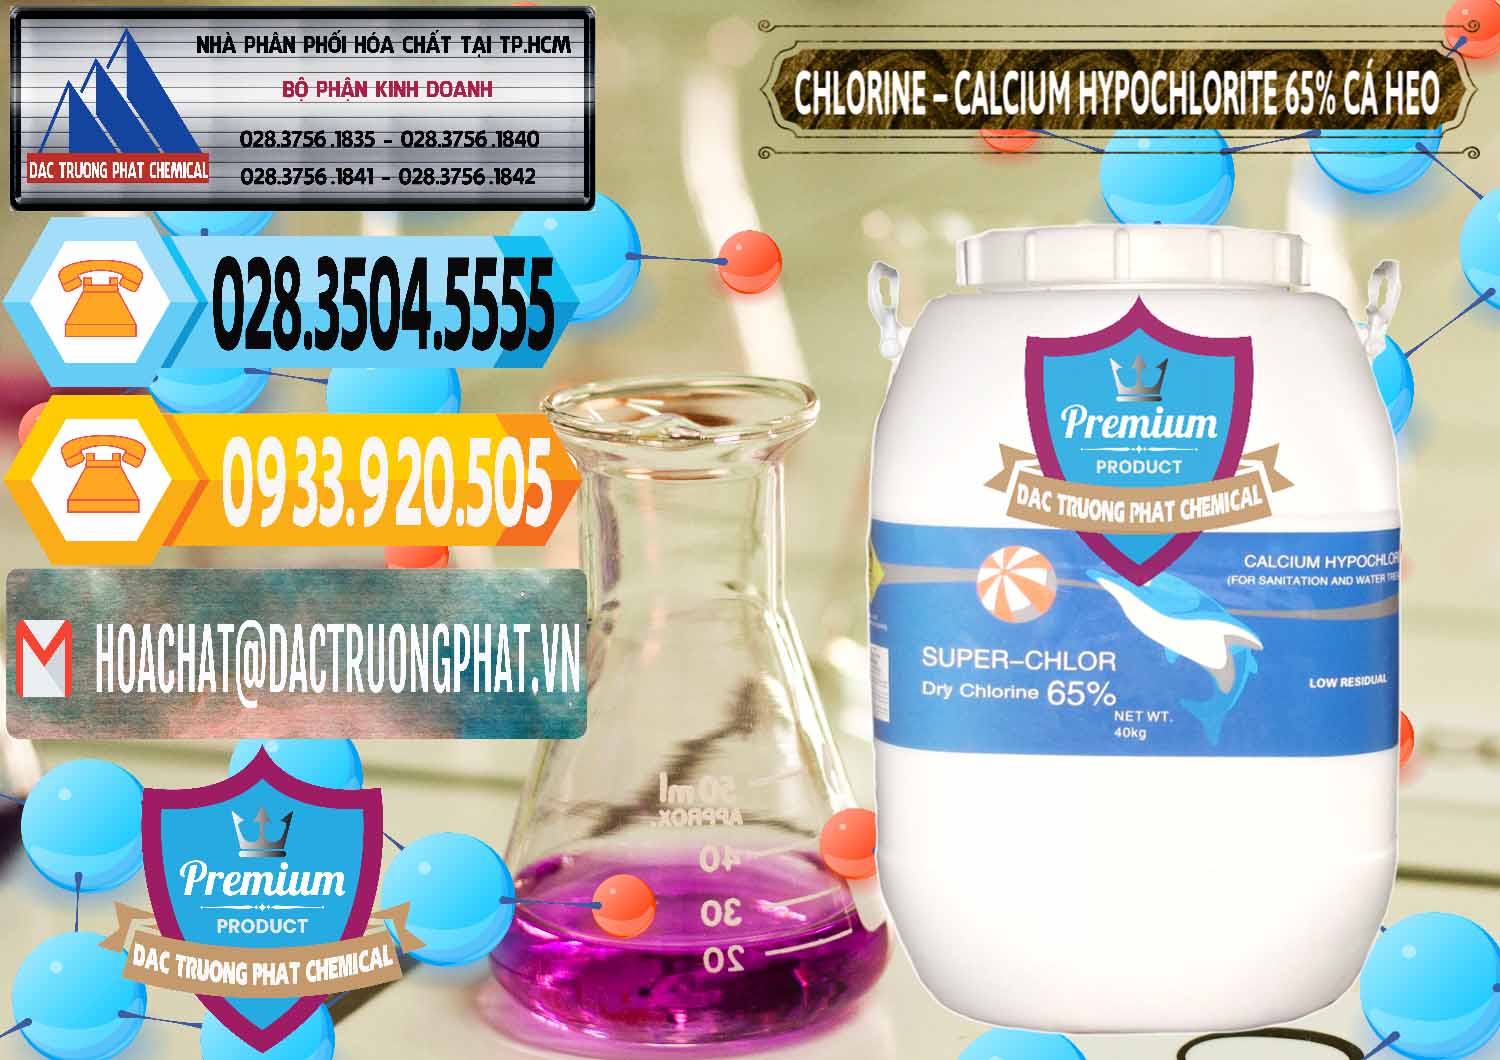 Chuyên cung cấp _ bán Clorin - Chlorine Cá Heo 65% Trung Quốc China - 0053 - Chuyên kinh doanh ( cung cấp ) hóa chất tại TP.HCM - hoachattayrua.net